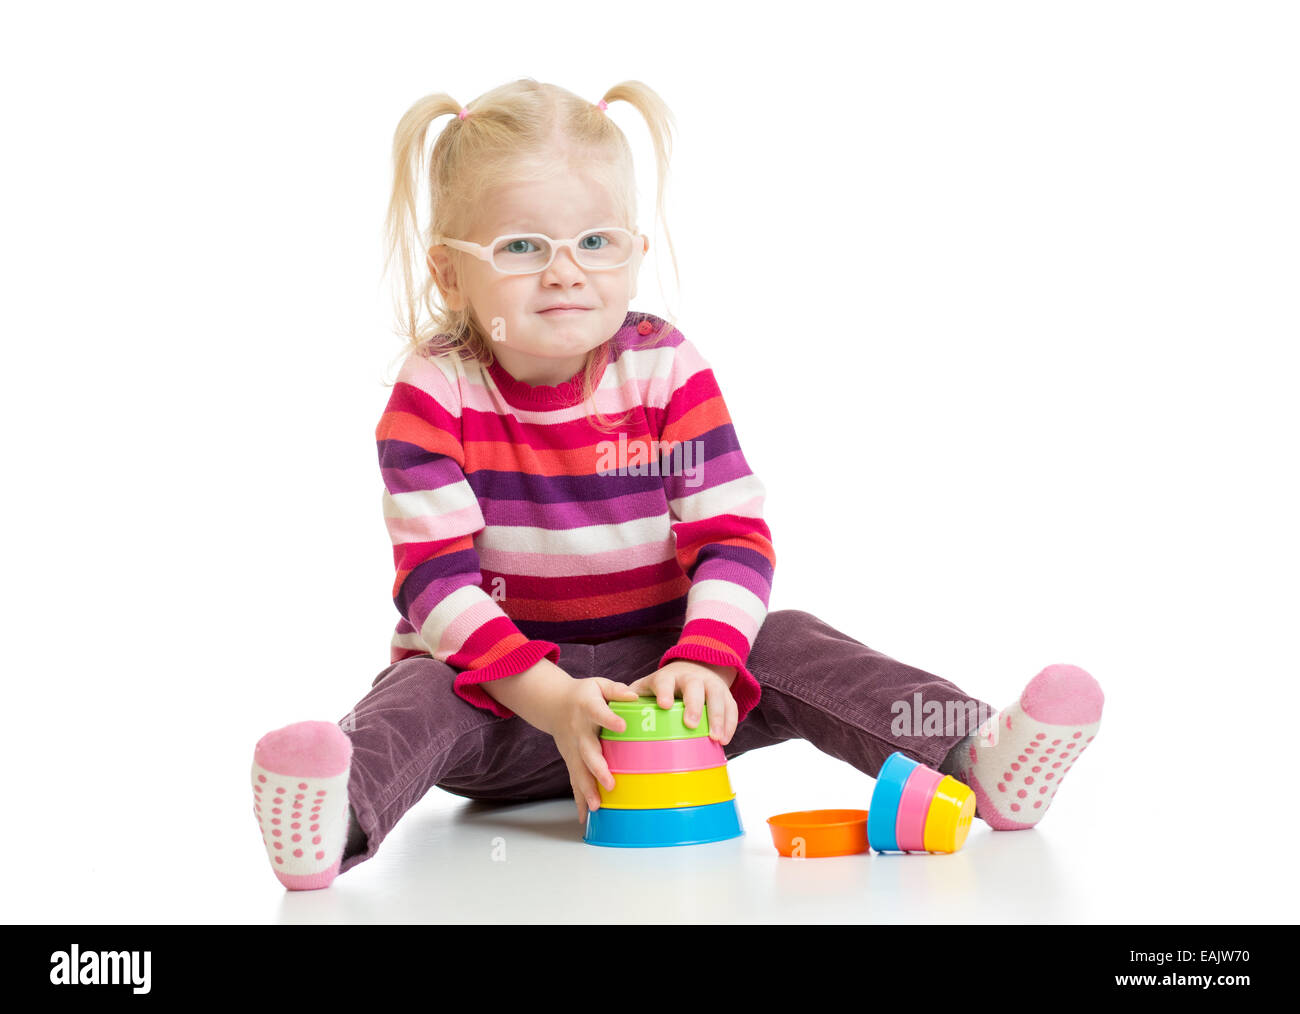 Funny bambino in eyeglases giocando colorato giocattolo piramide isolato Foto Stock